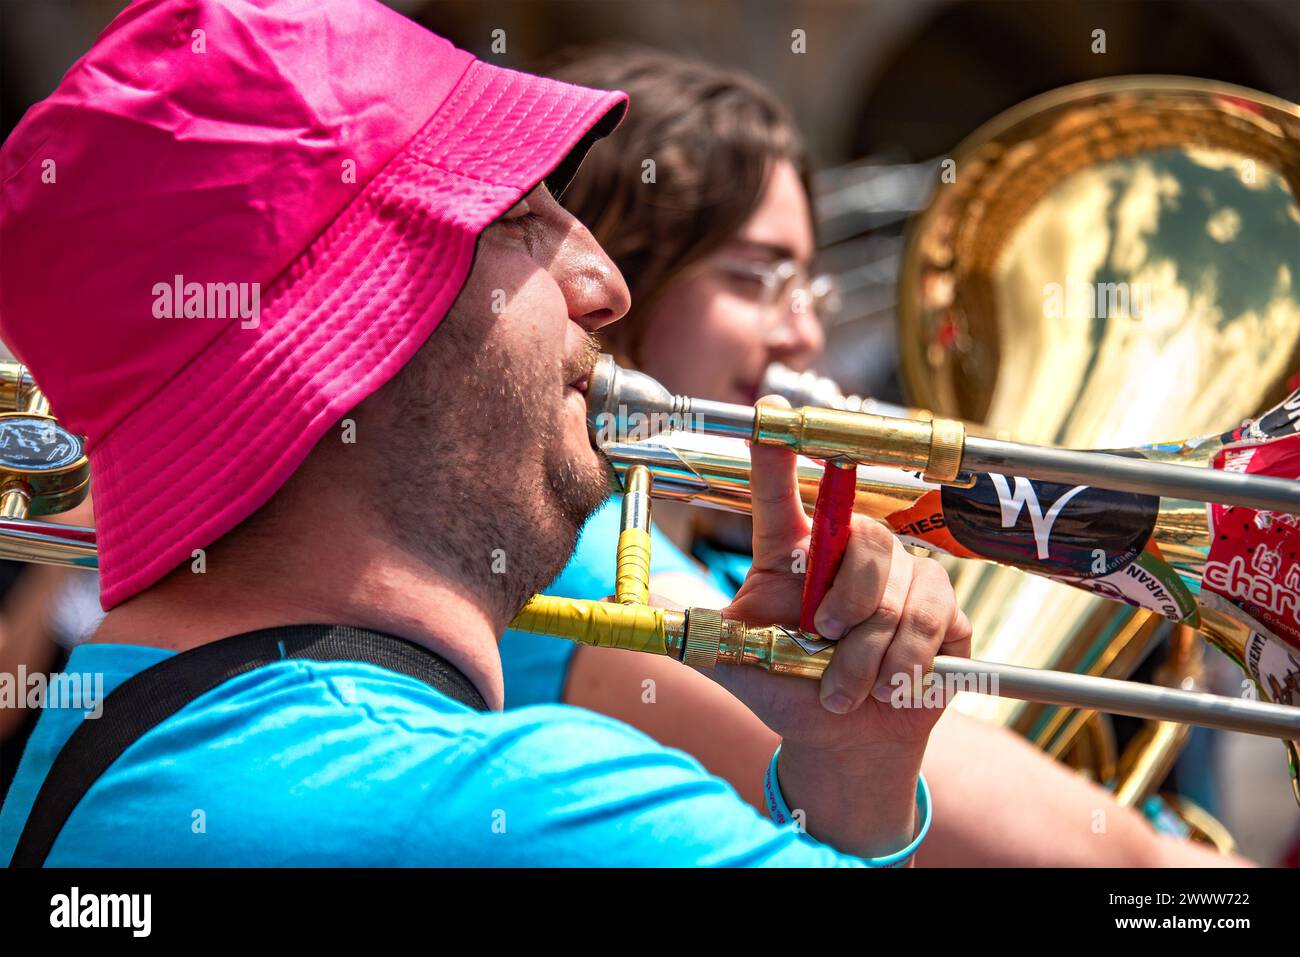 Salamanca, Spagna, 10 giugno 23: Sfilata di bande di ottoni a Plaza Mayor de Salamanca. Un musicista maschile suona il suo Trombone mentre una musicista femminile suona Tuba. Foto Stock